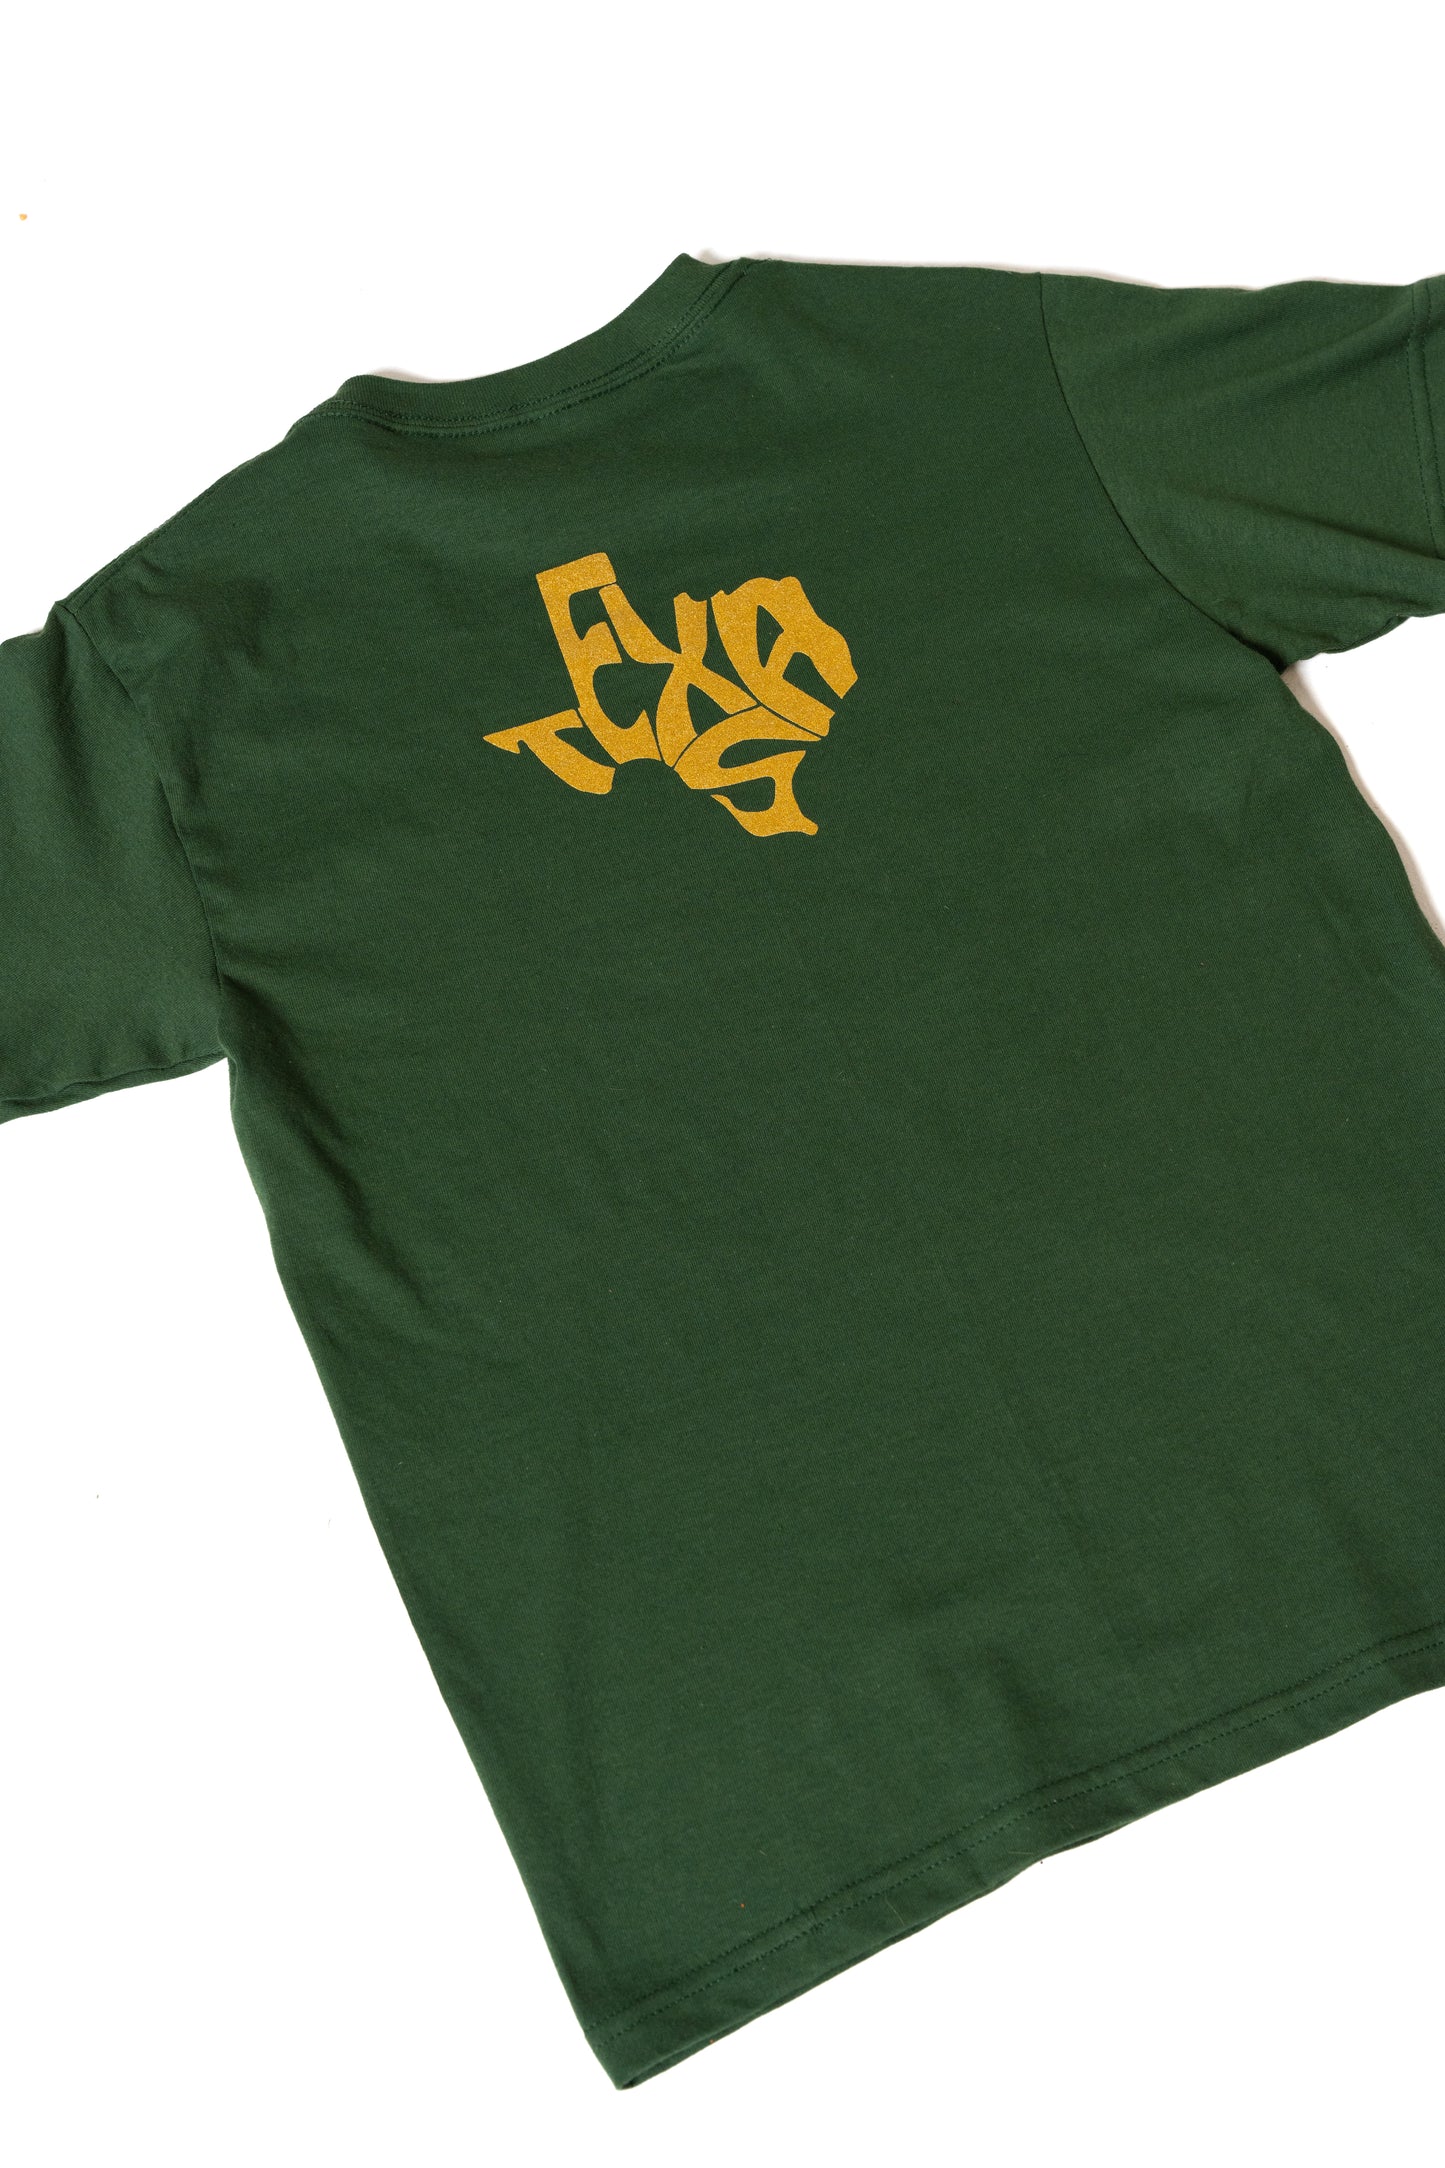 TXHSFB T-Shirt Green/Gold